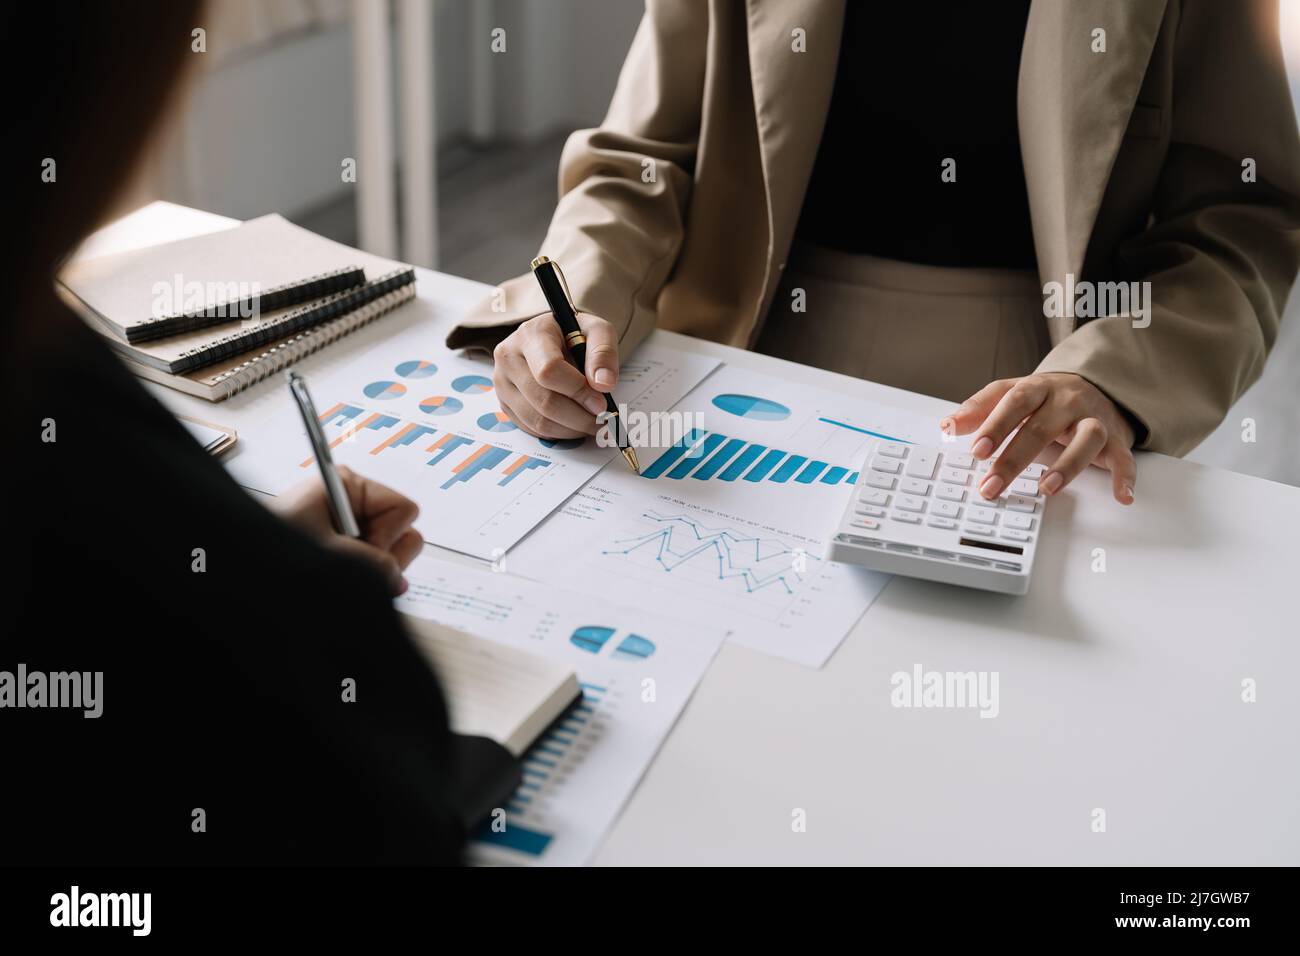 Business People utilizzando una calcolatrice e l'analisi di reddito, bilancio, bilancio, informazioni aziendali - business meeting concept. Foto Stock